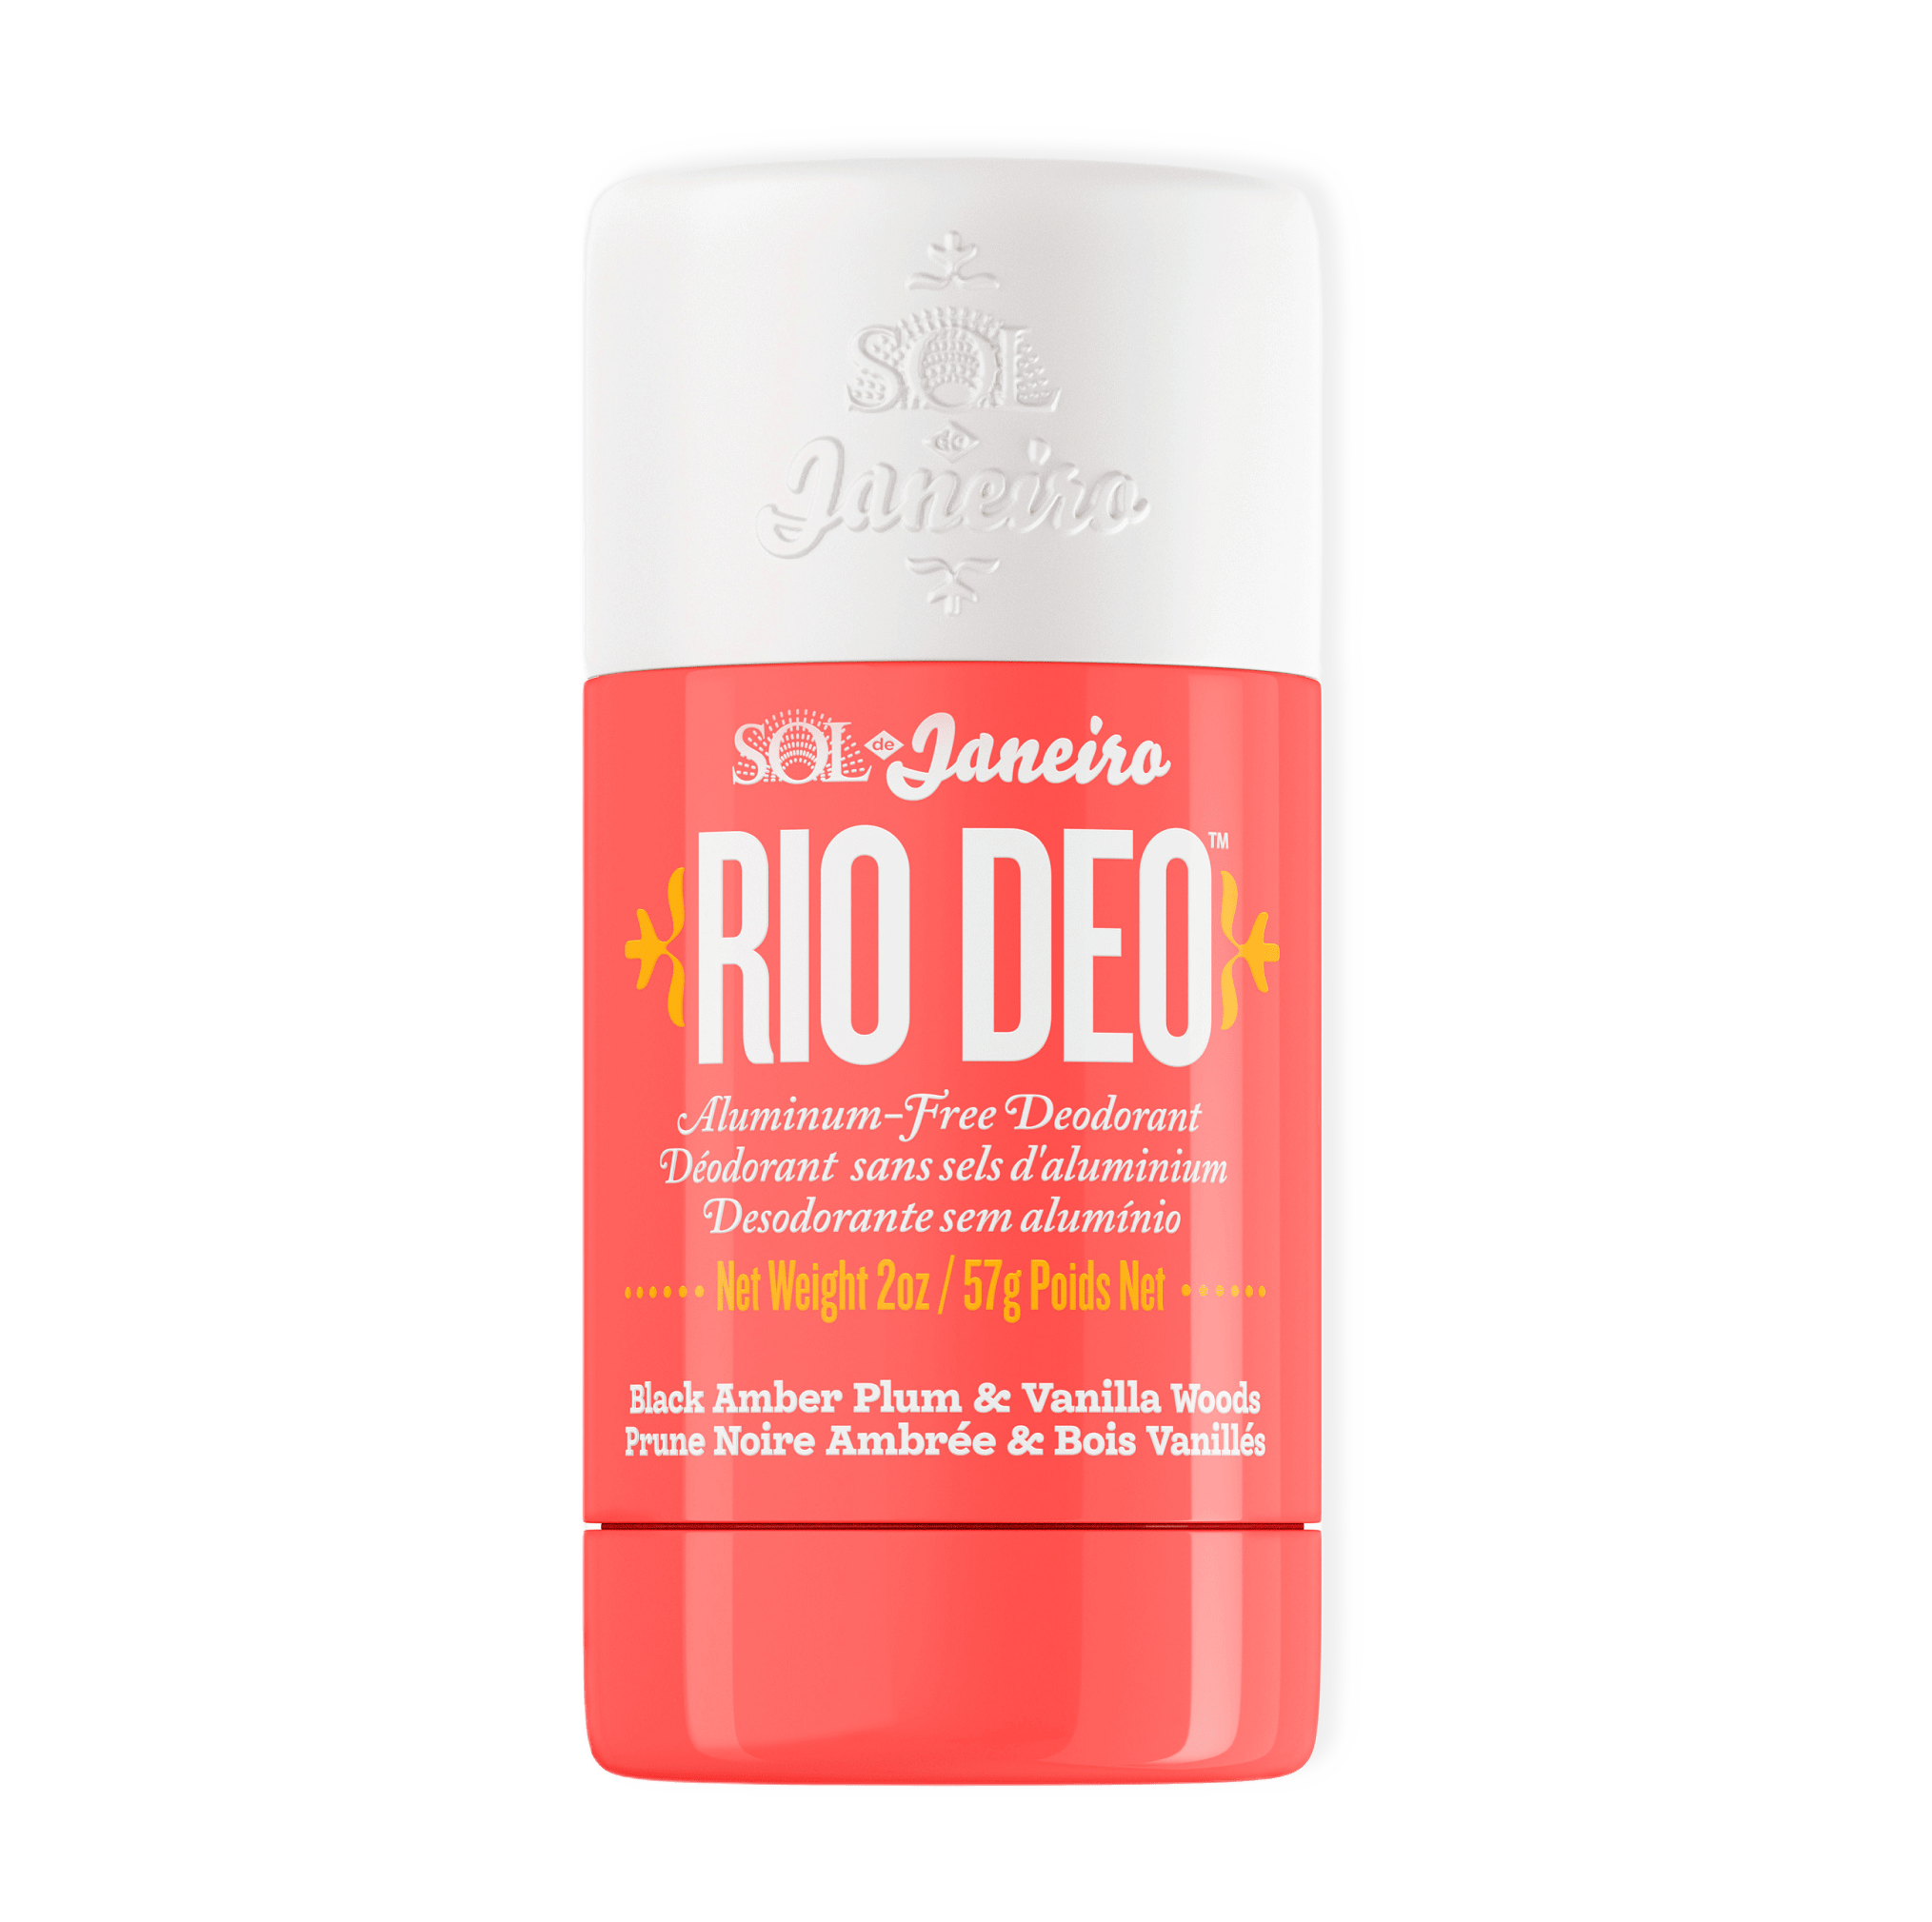 Rio Deo 40 Aluminum-Free Deodorant från Sol de Janeiro